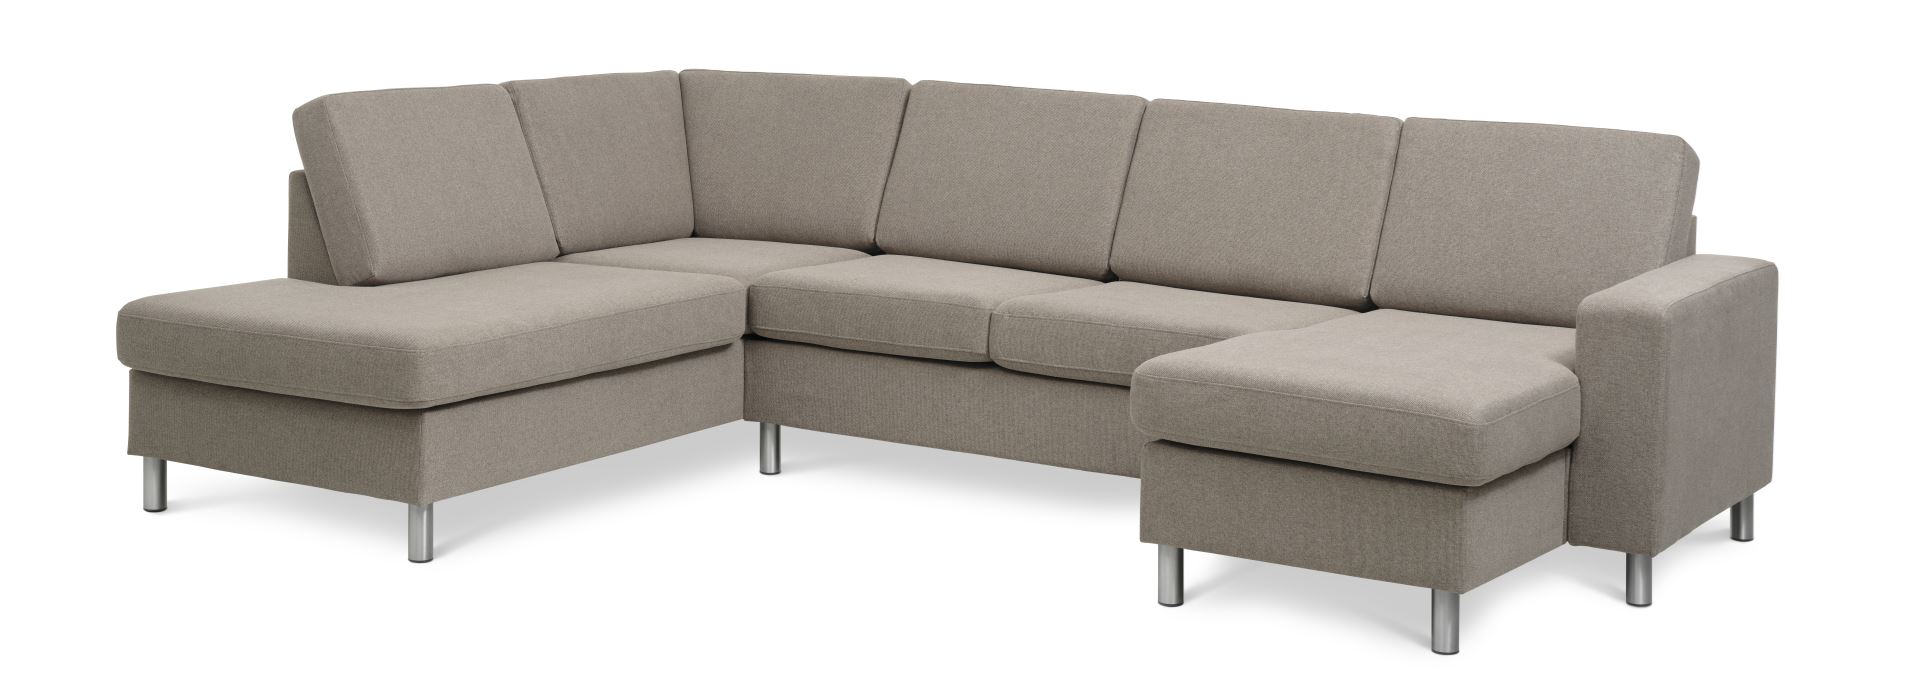 Pan set 4 U OE left sofa med chaiselong - antelope beige polyester stof og børstet aluminium